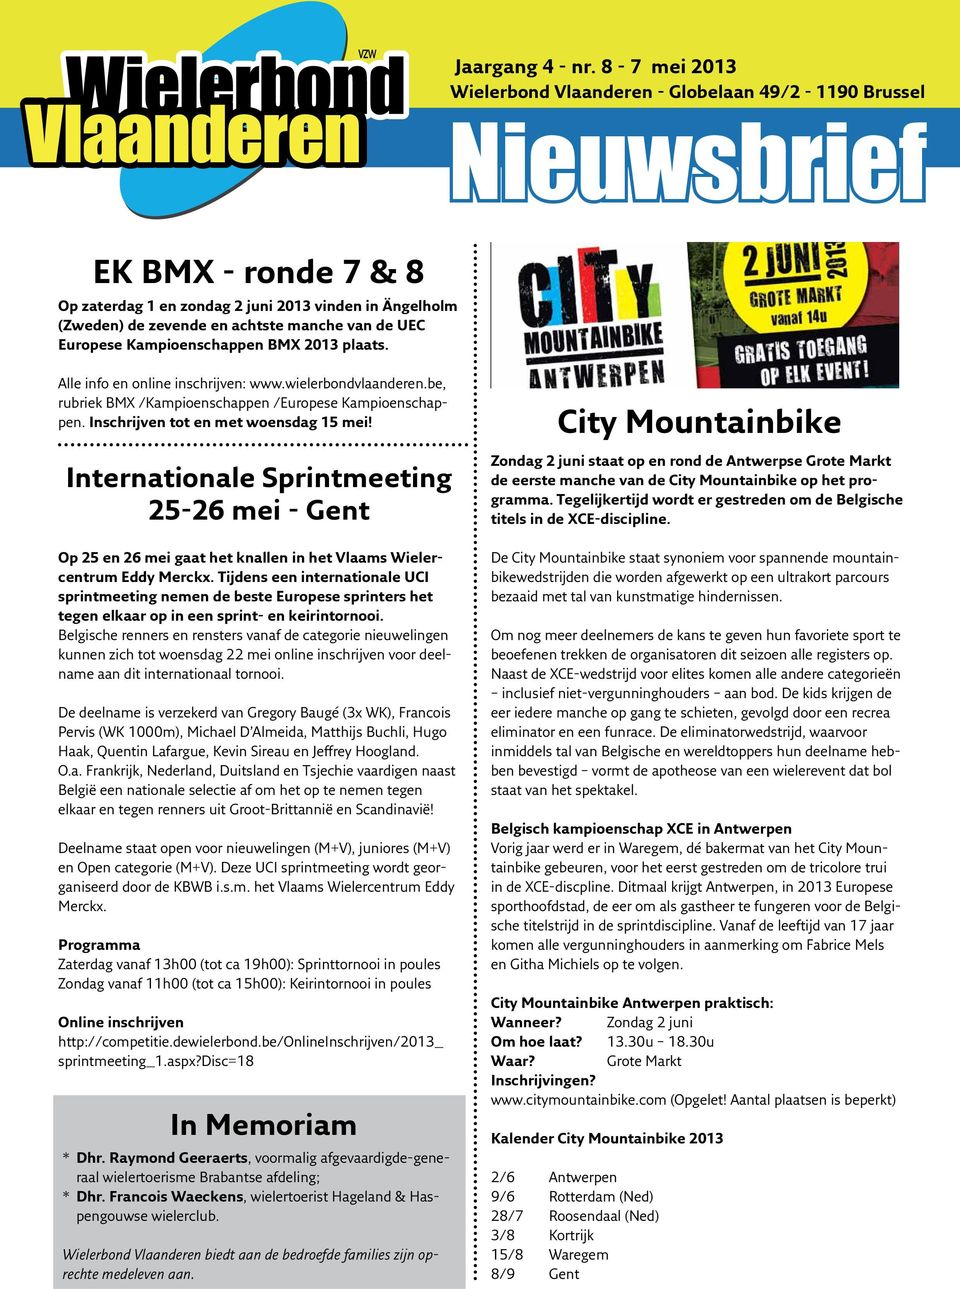 UEC Europese Kampioenschappen BMX 2013 plaats. Alle info en online inschrijven: www.wielerbondvlaanderen.be, rubriek BMX /Kampioenschappen /Europese Kampioenschappen.